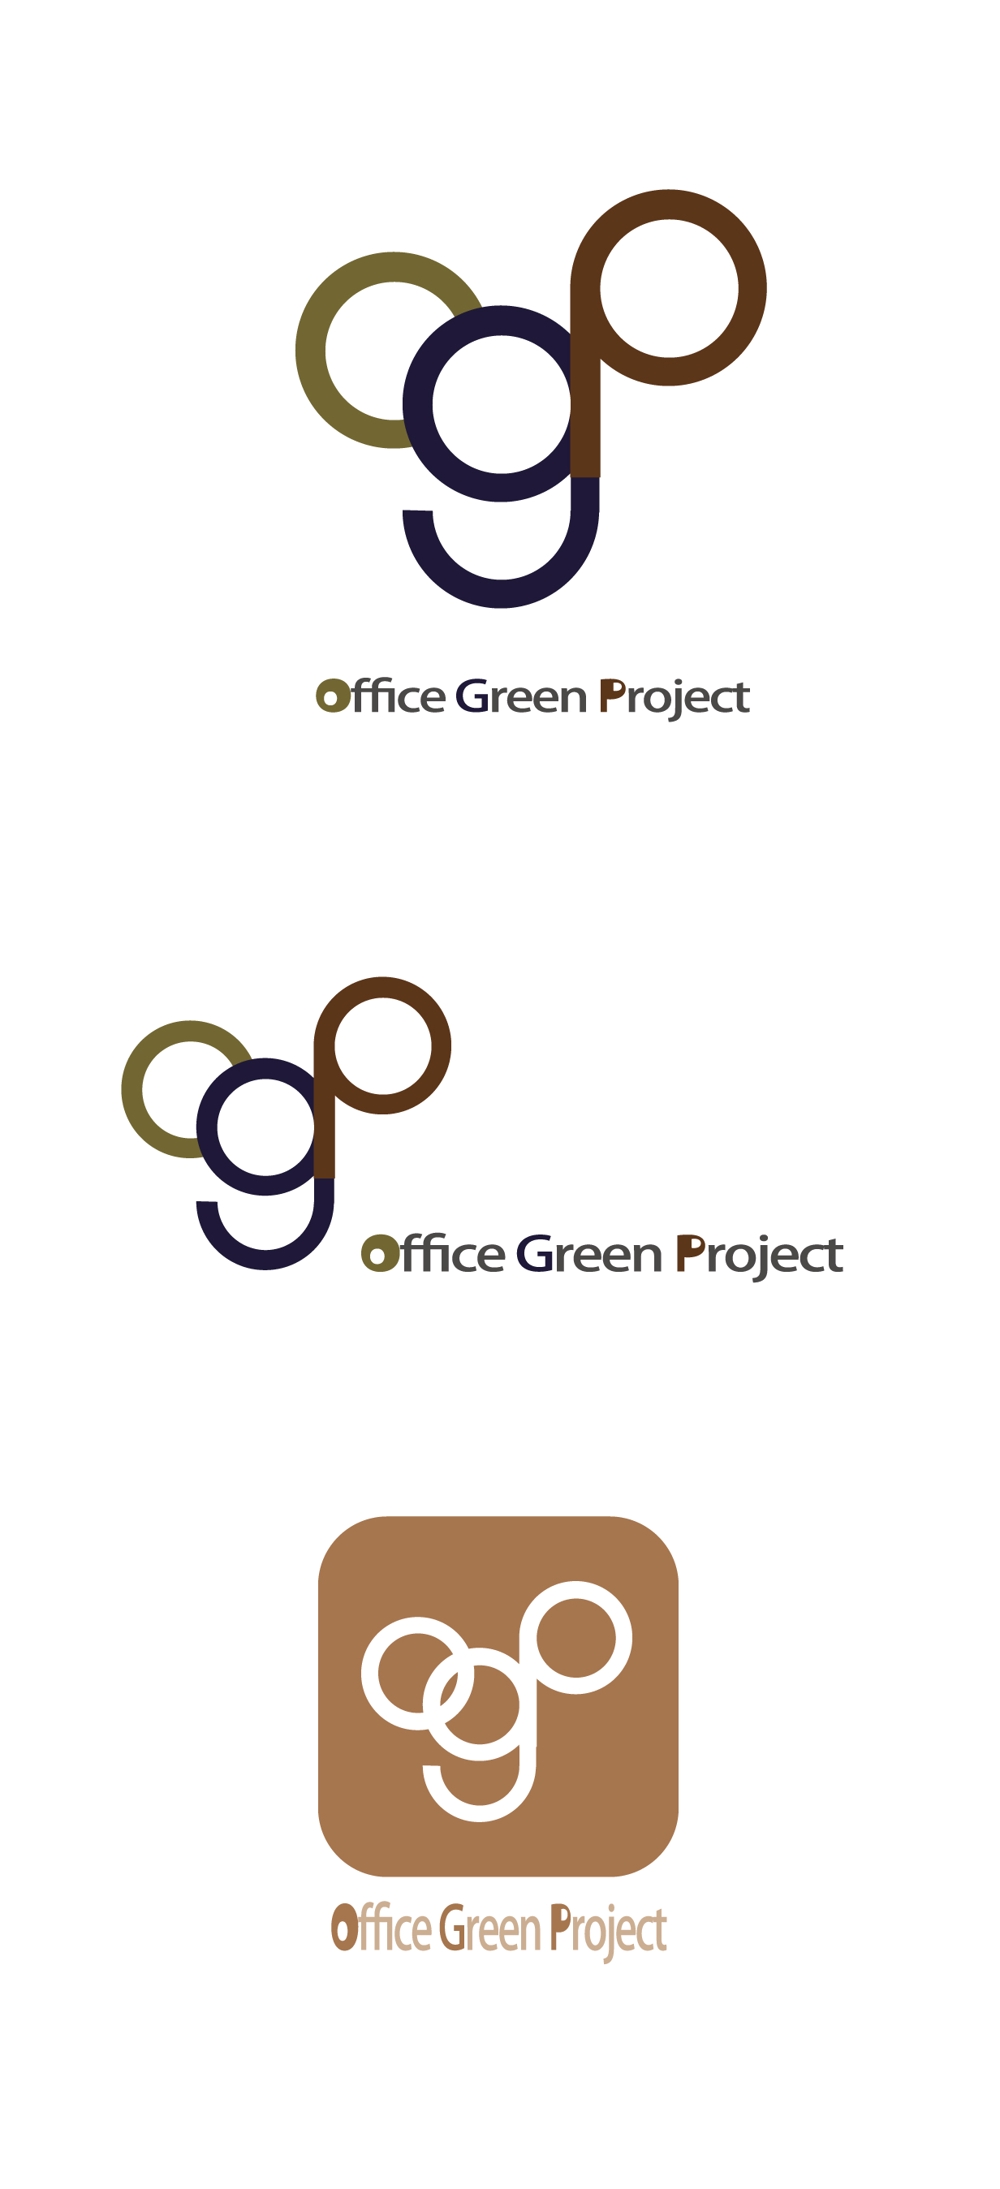 Office Green Project01@.jpg